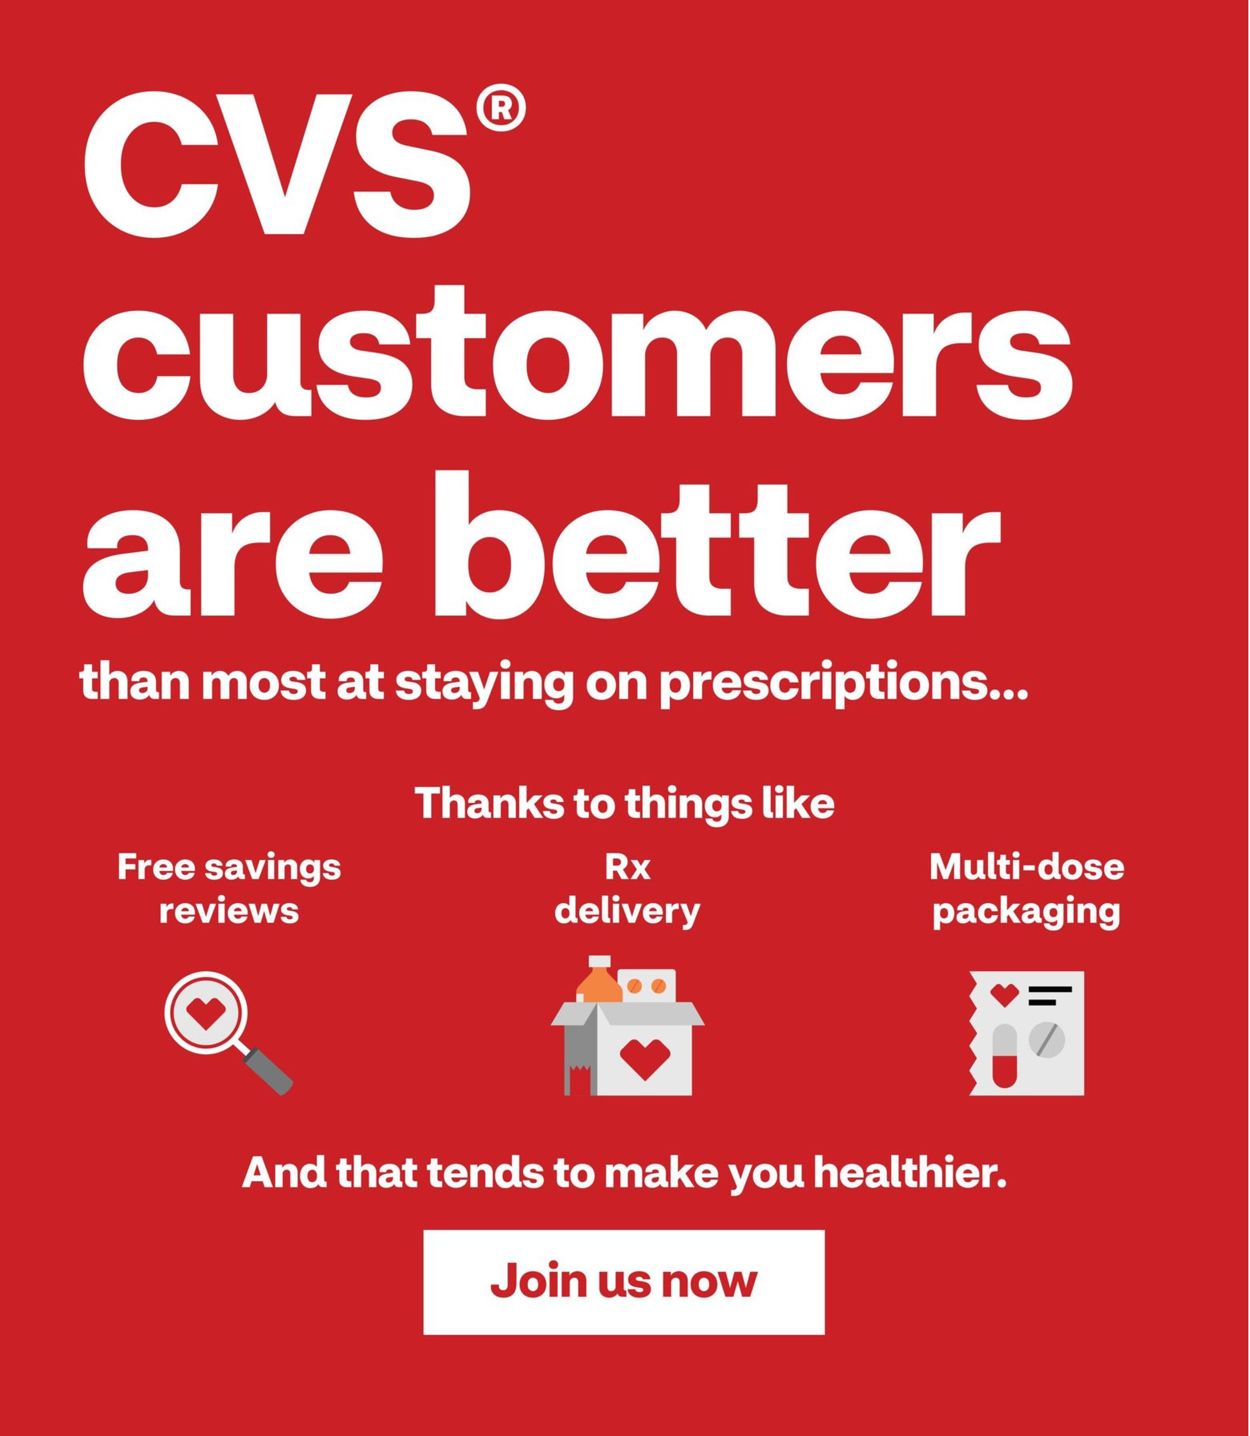 Catalogue CVS Pharmacy - Holiday Ad 2019 from 12/15/2019